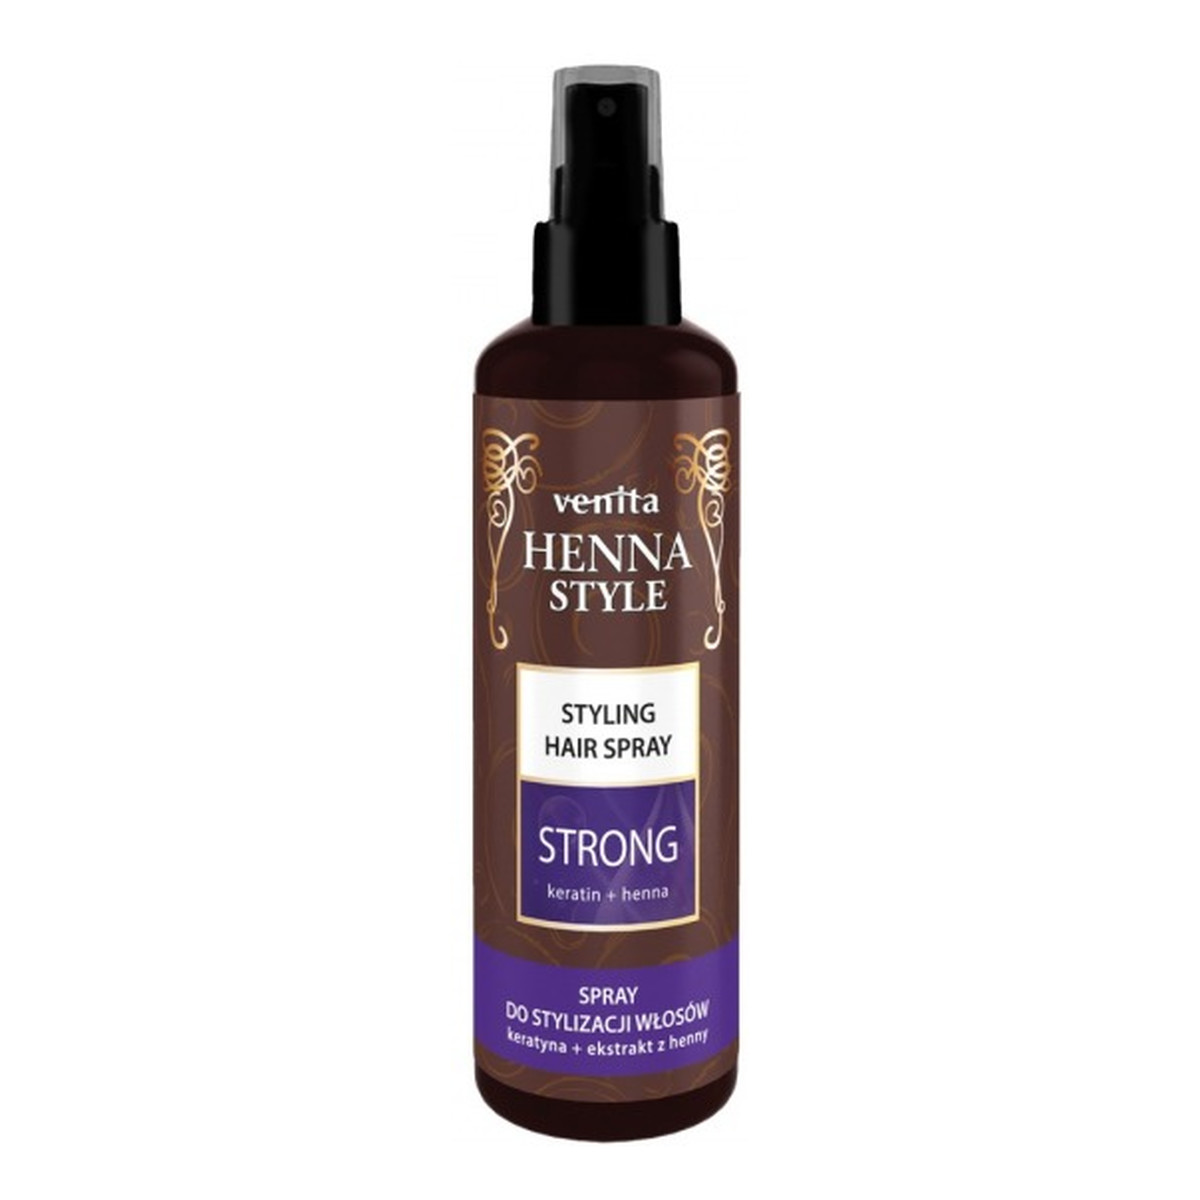 Venita Henna Style Spray do stylizacji włosów Strong Keratin+Henna 200ml